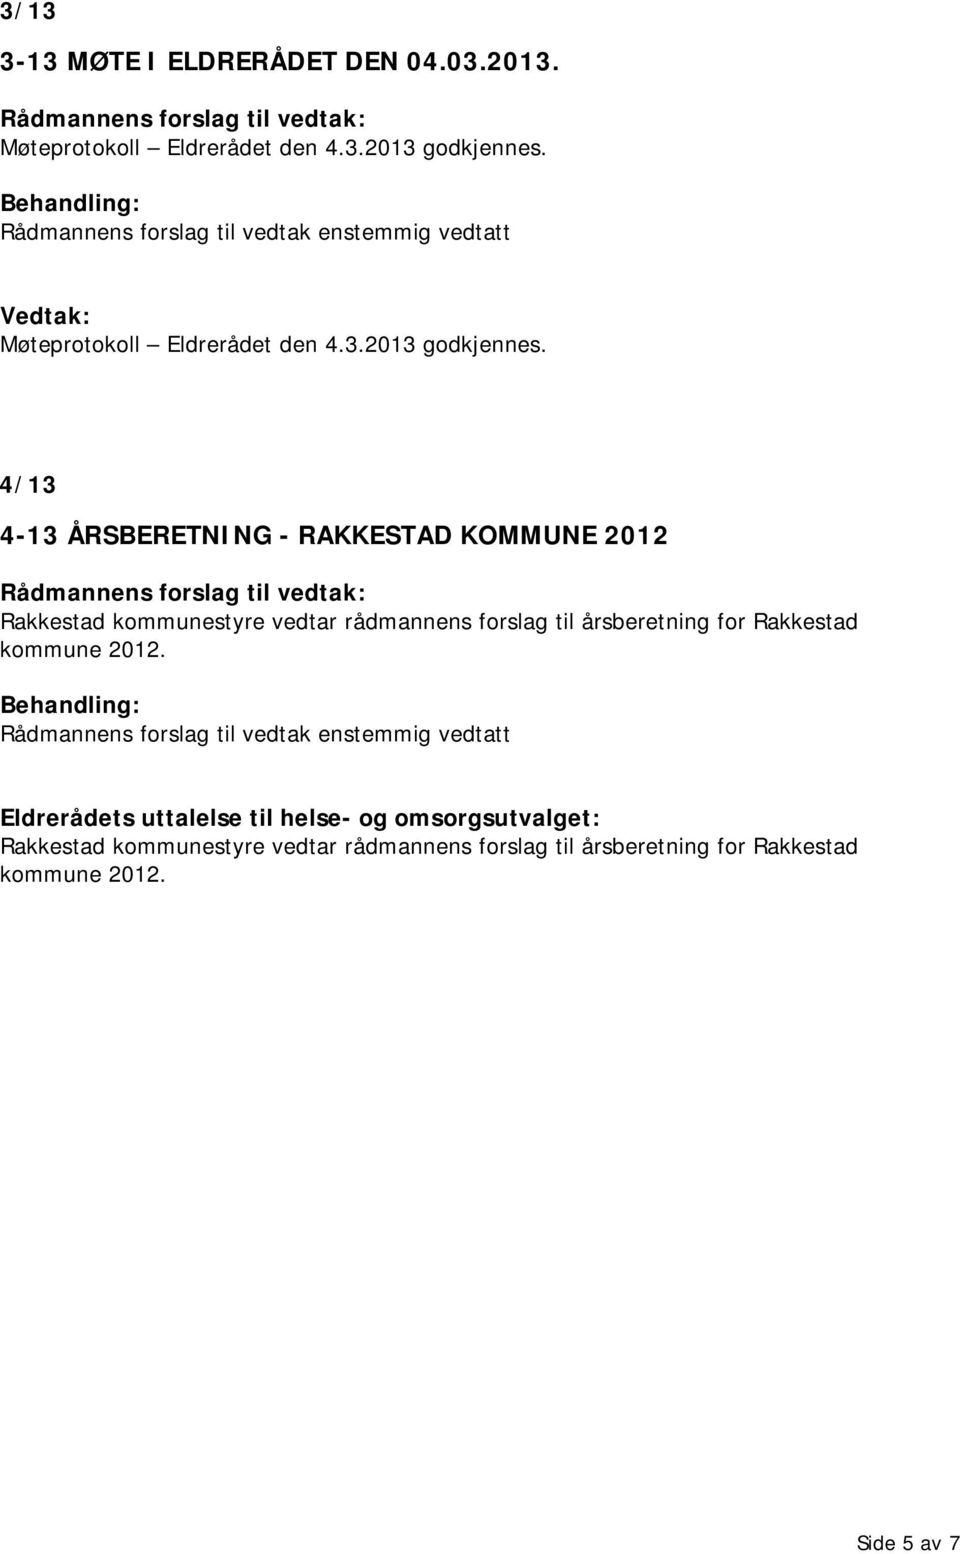 4/13 4-13 ÅRSBERETNING - RAKKESTAD KOMMUNE 2012 Rådmannens forslag til vedtak: Rakkestad kommunestyre vedtar rådmannens forslag til årsberetning for Rakkestad